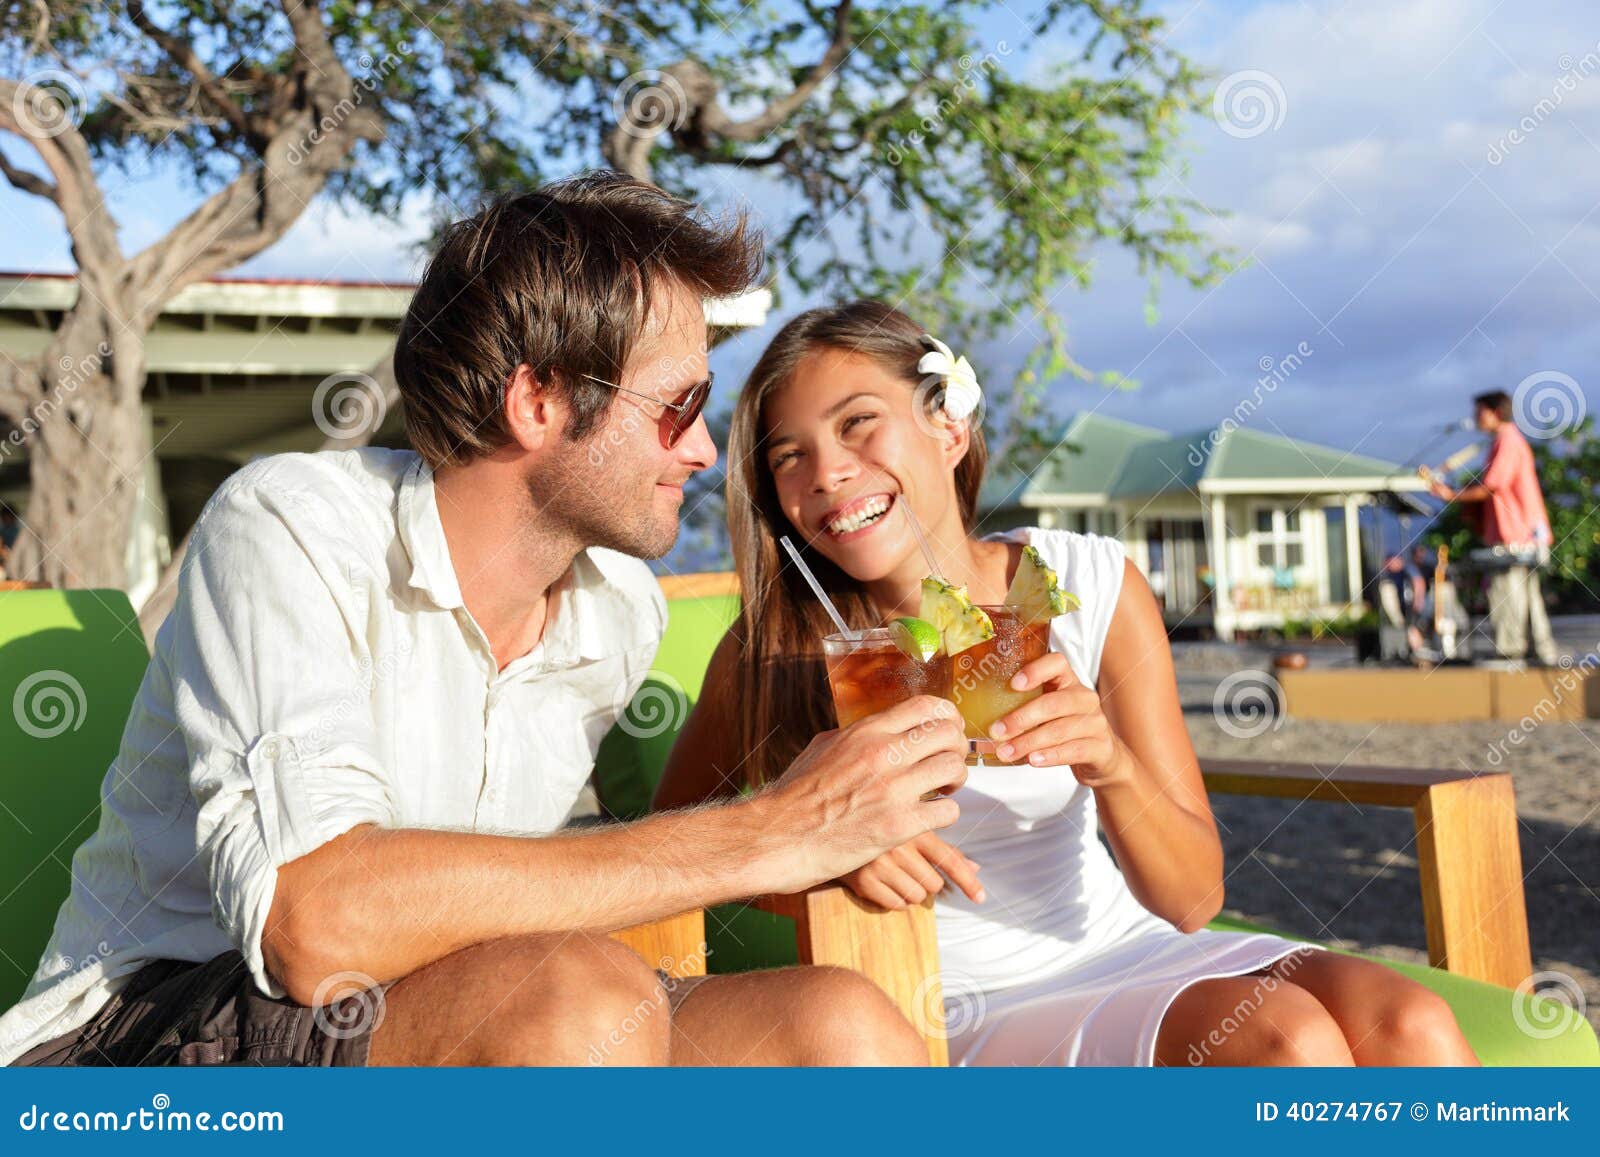 Interested in guy. Человек пляж пить лимонад. Влюбленные пьют лимонад. Пара пьет коктейль и целуется. Девушка и мужчина выпивают на природе фотосессия.